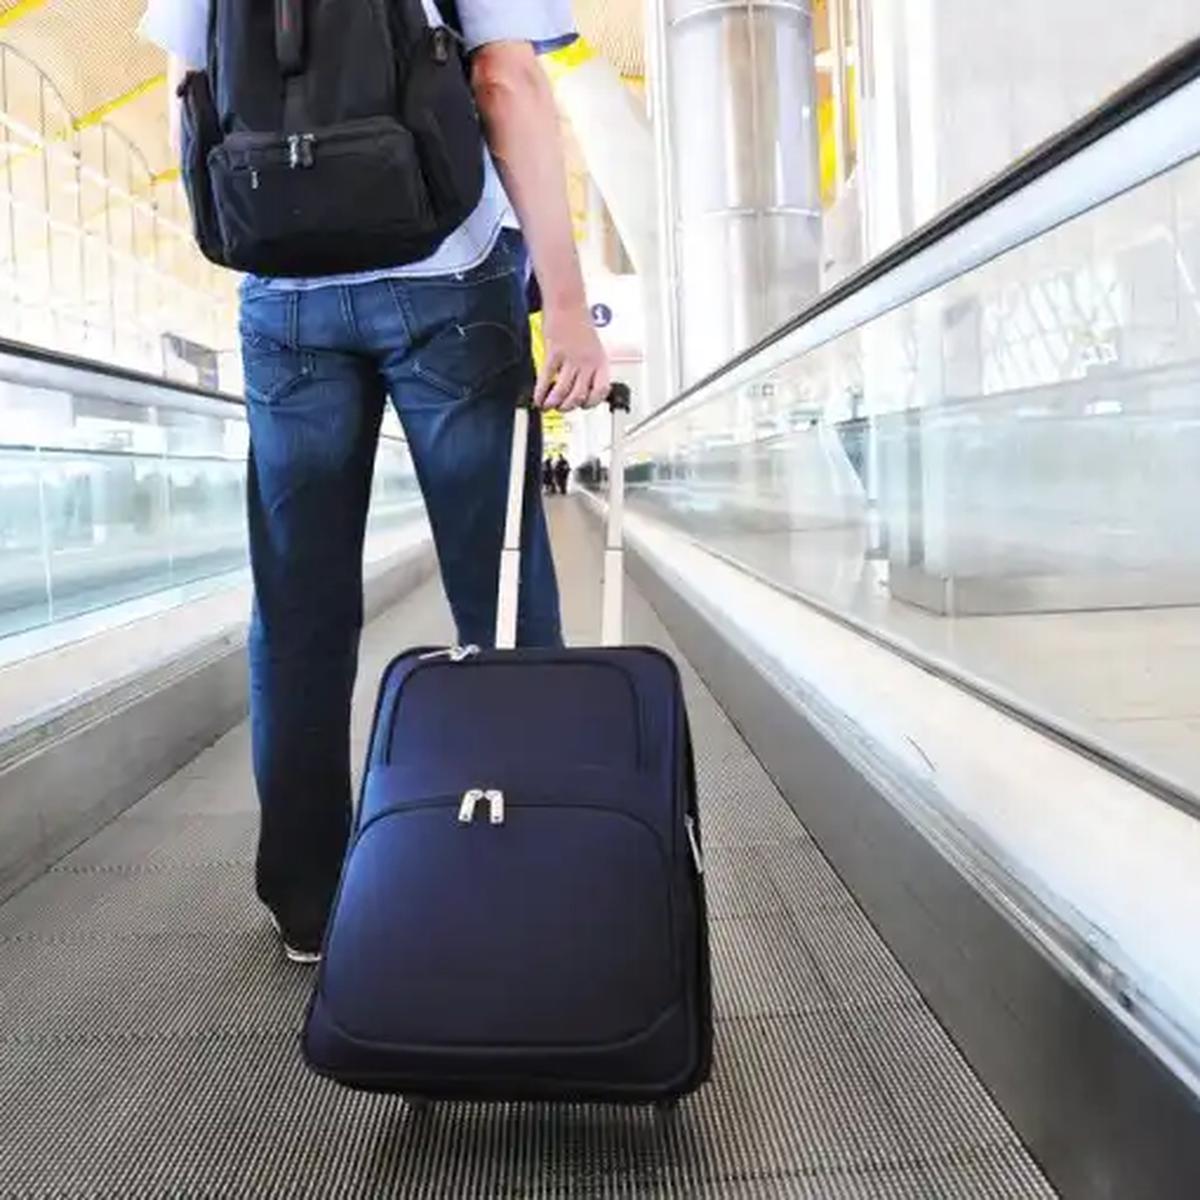 10 ítems que no puedes llevar en tu maleta de mano en el avión, viajar, VAMOS